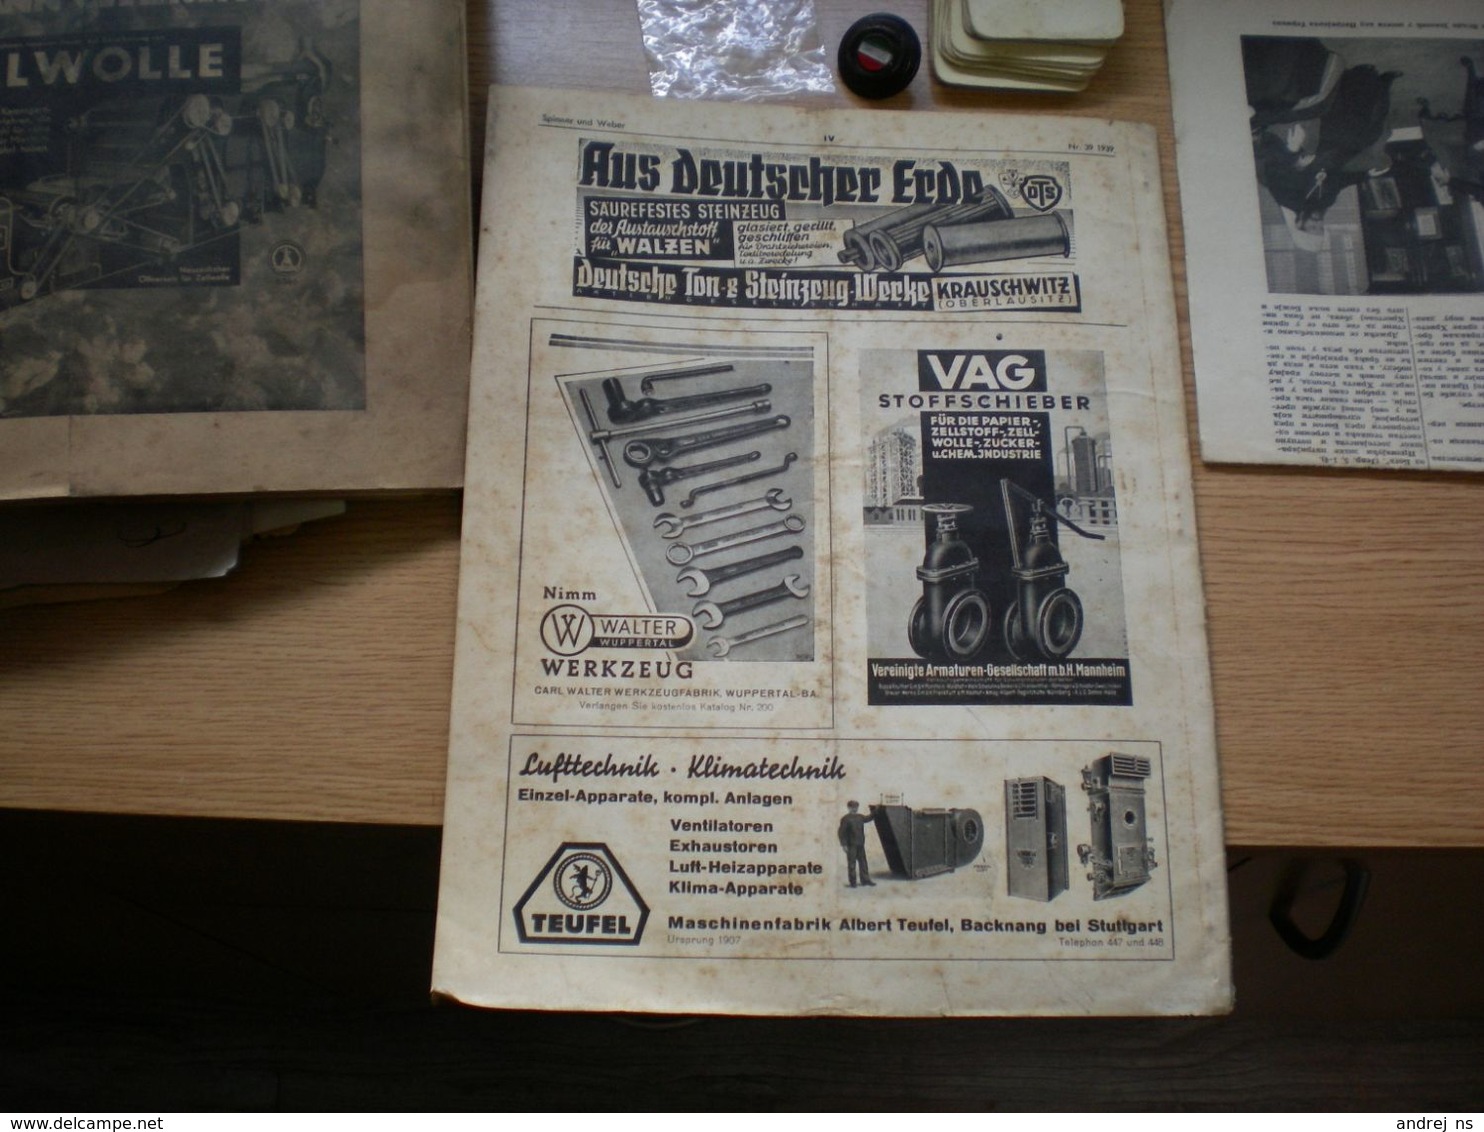 Der Spinner und Weber Textil Betriebt Hartmann streichgarn Ringspinnmaschine Chemnitz 1939